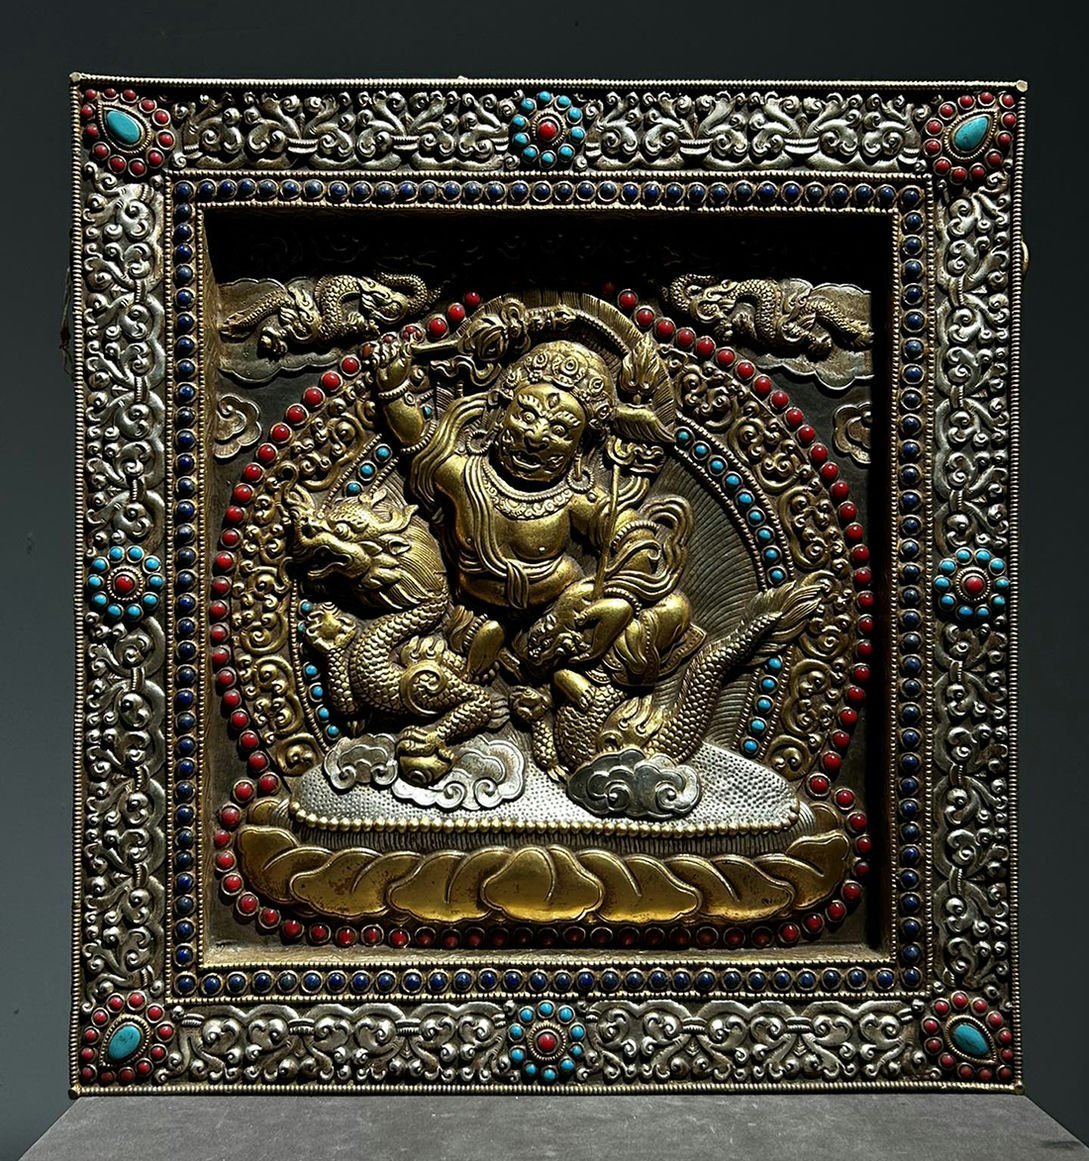 ◆羽彰・古美術◆A7910 清時代 仏教古美術 チベット密教 宝石象嵌 銀塗金 仏像タンカ 細密造 寺院収蔵品